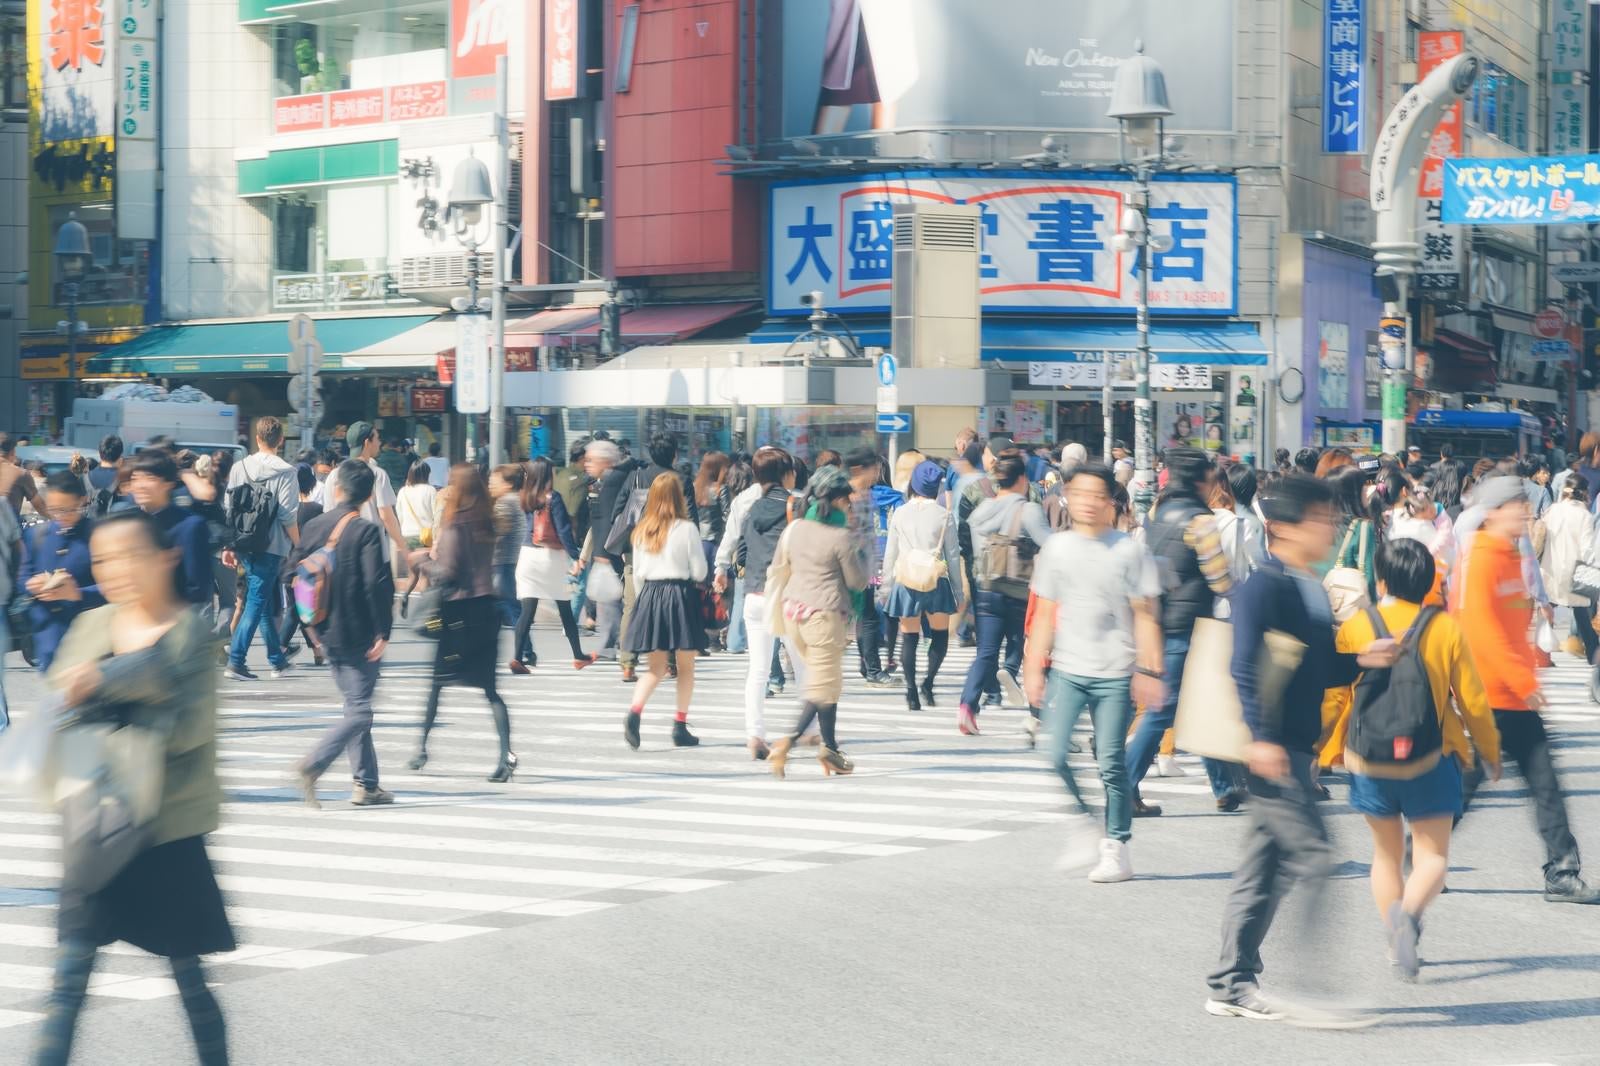 「渋谷駅前のスクランブル交差点」の写真